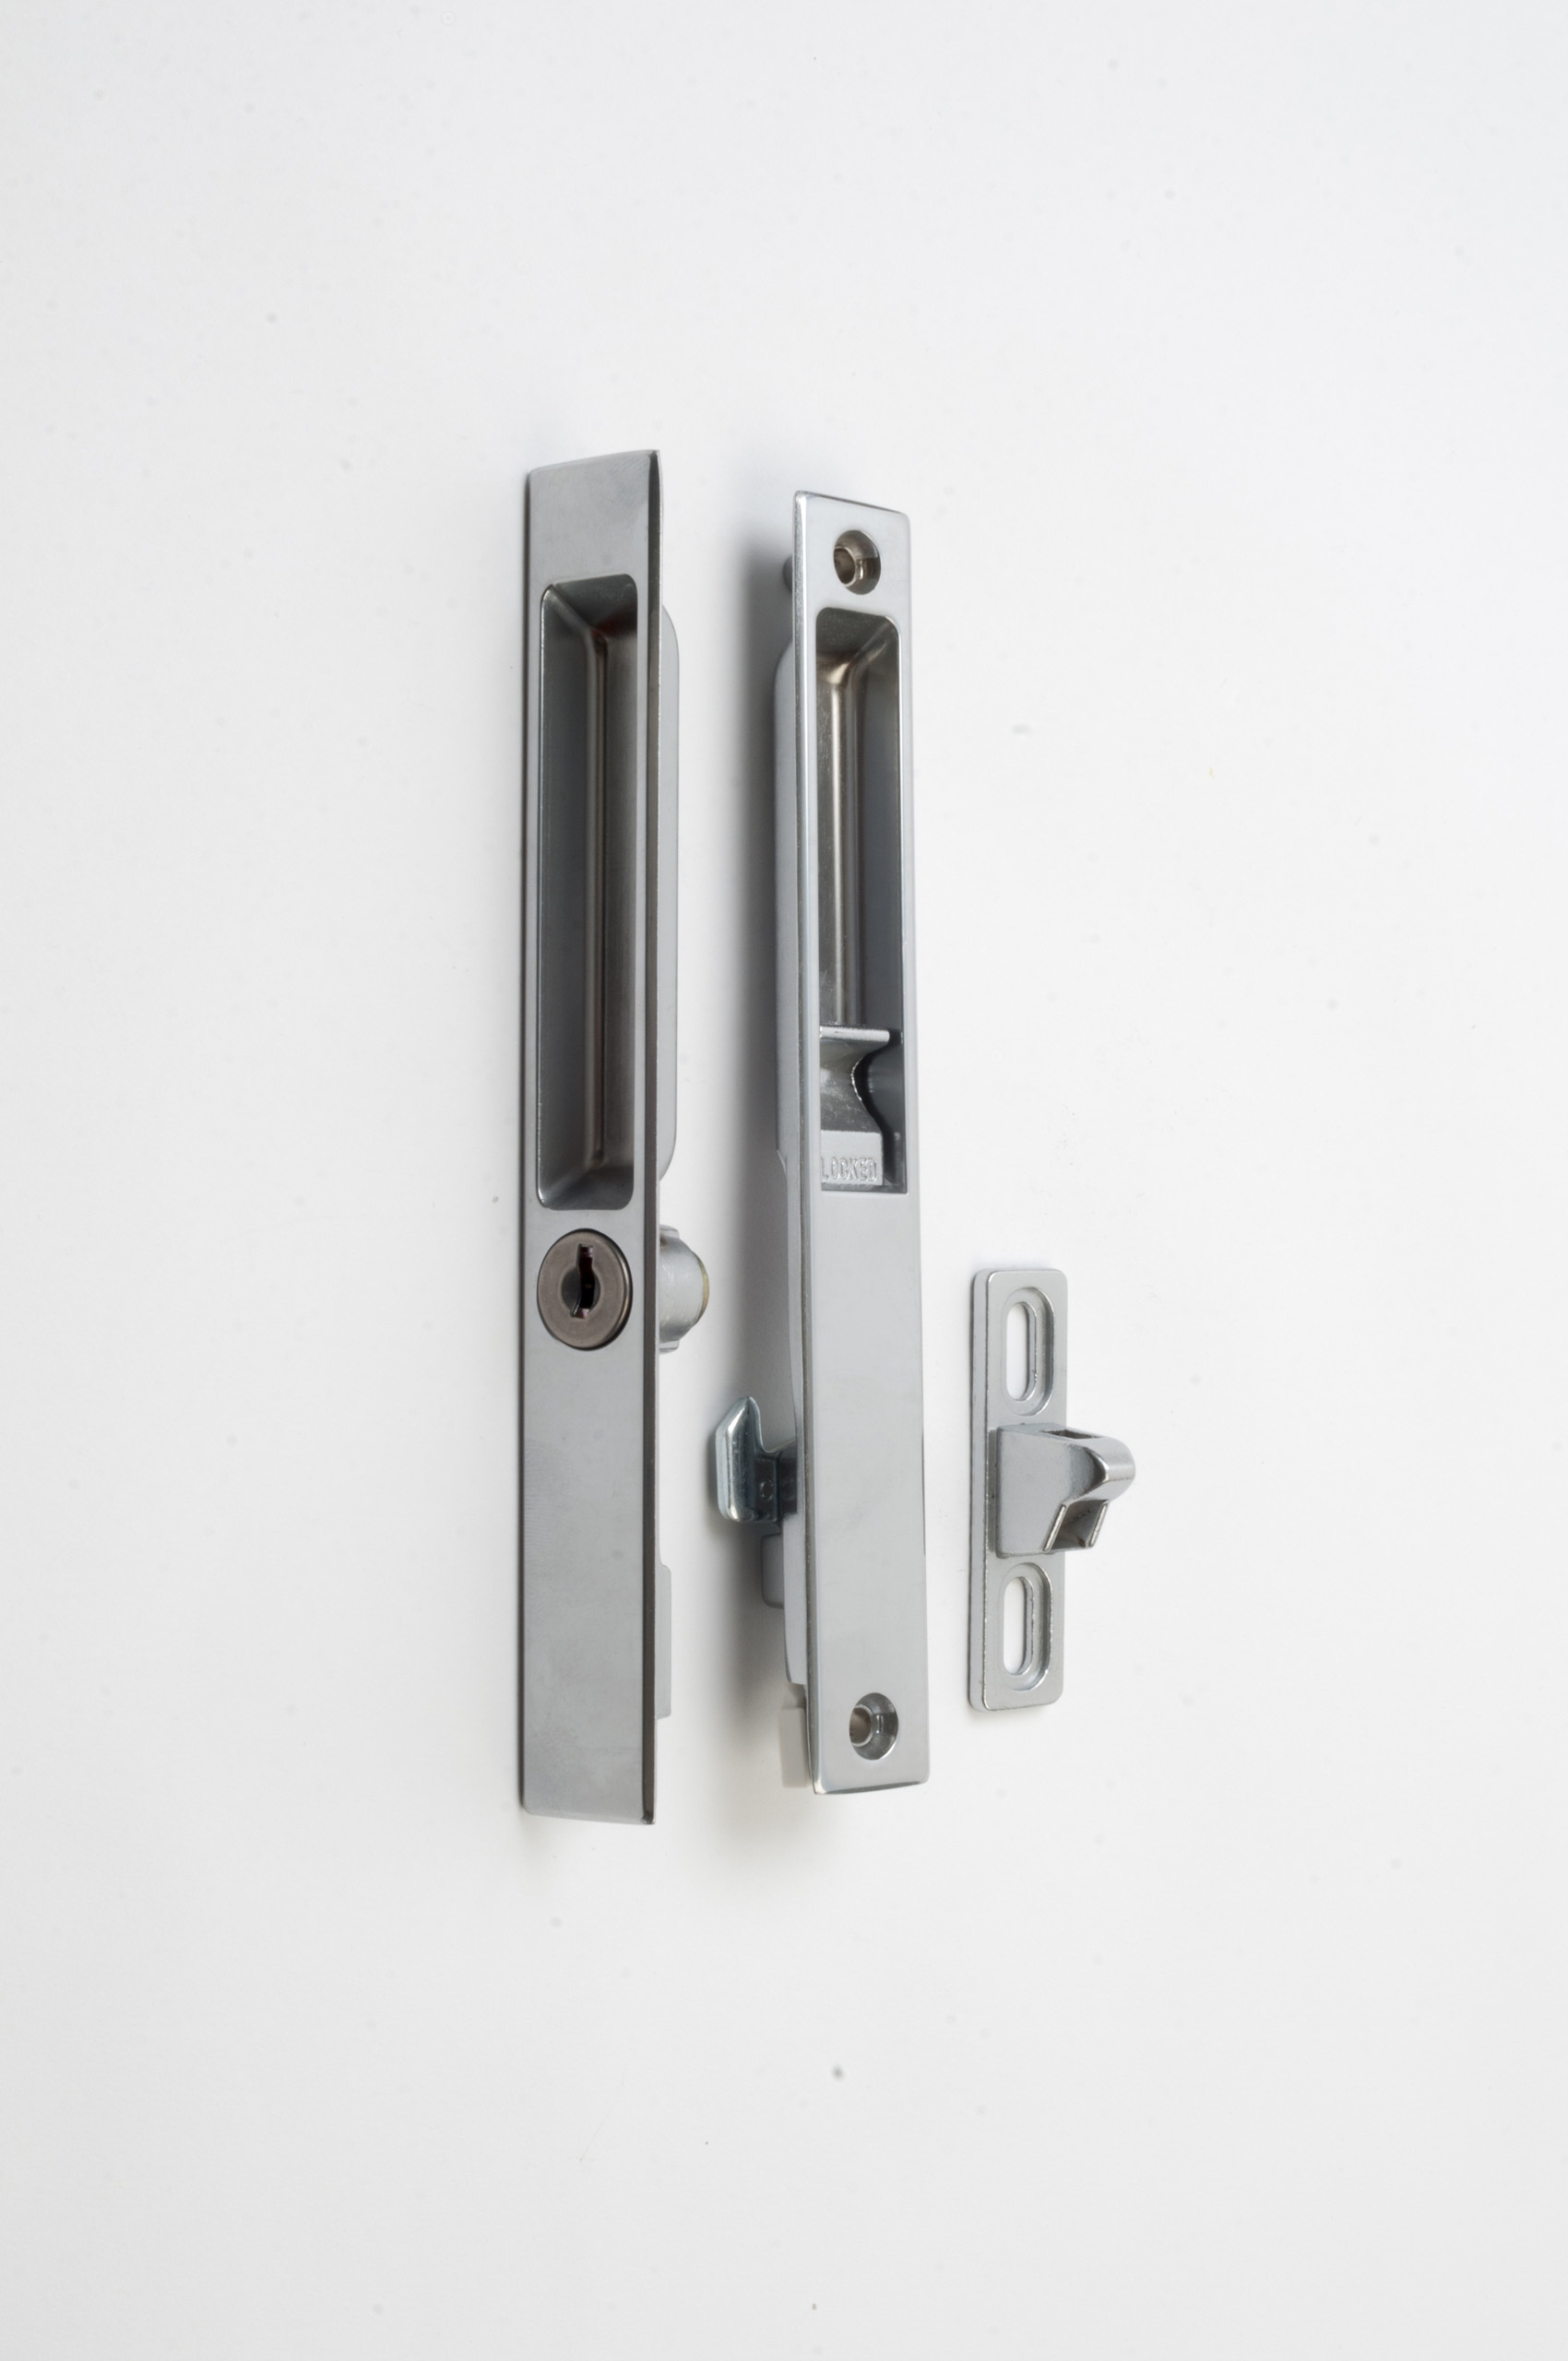 Patio Sliding Door Lock With Keysliding patio door lock and handle silver kd supplies